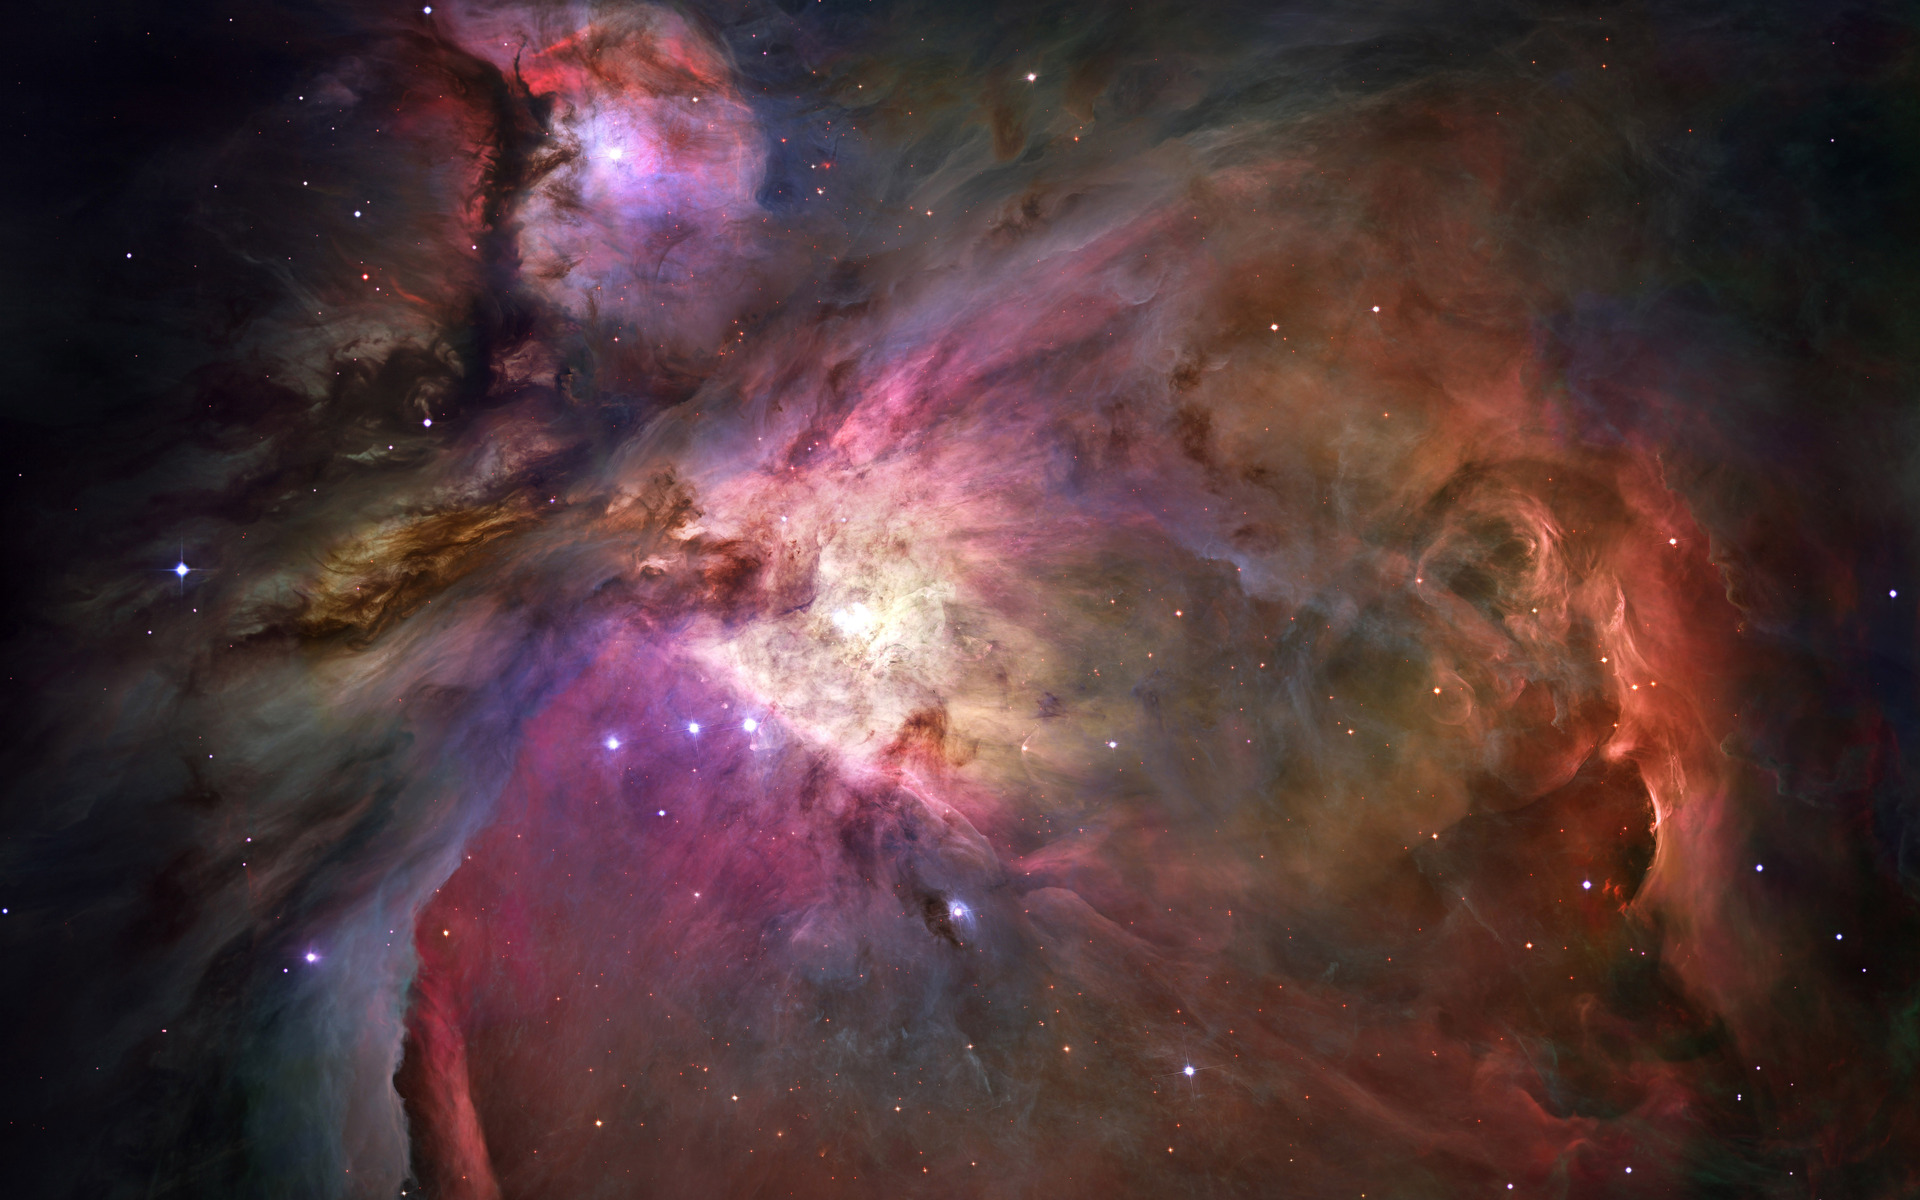 Descarga gratuita de fondo de pantalla para móvil de Nebulosa, Espacio, Ciencia Ficción, Cosmos, Fotografía.